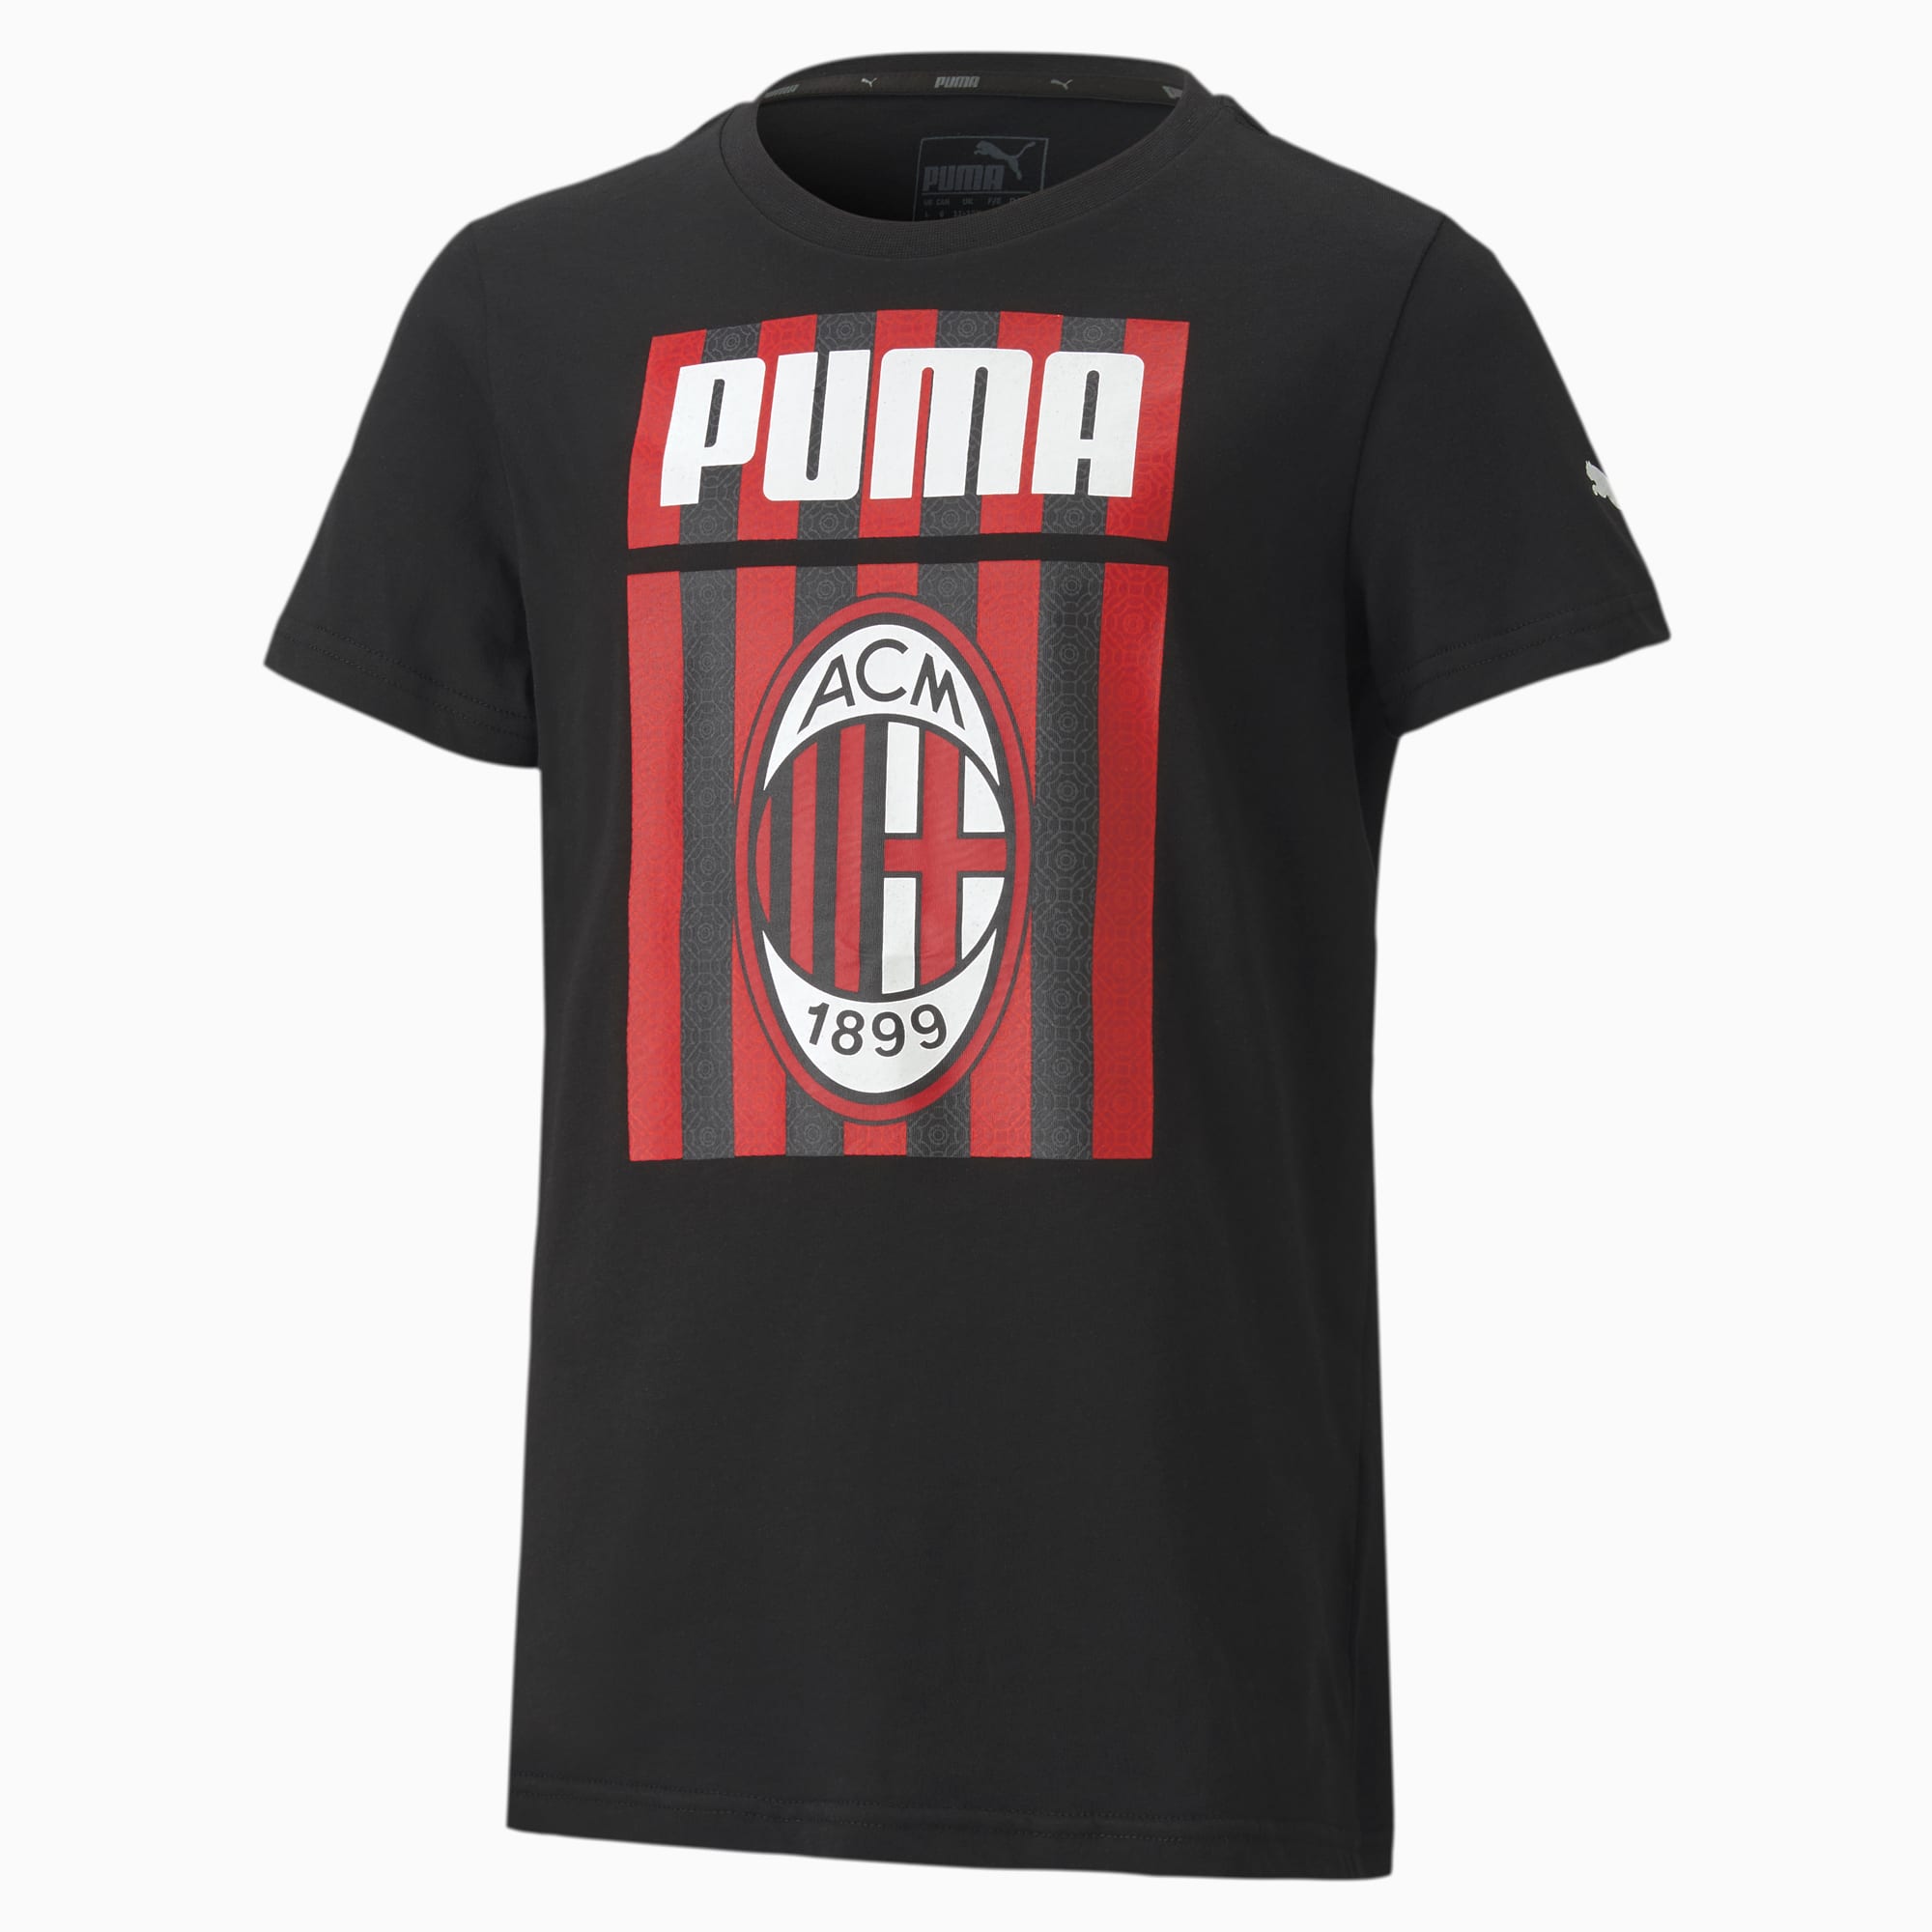 Image of PUMA AC Milan ftblCore Graphic Youth Fußball T-Shirt Für Kinder | Mit Aucun | Schwarz/Rot | Größe: 152